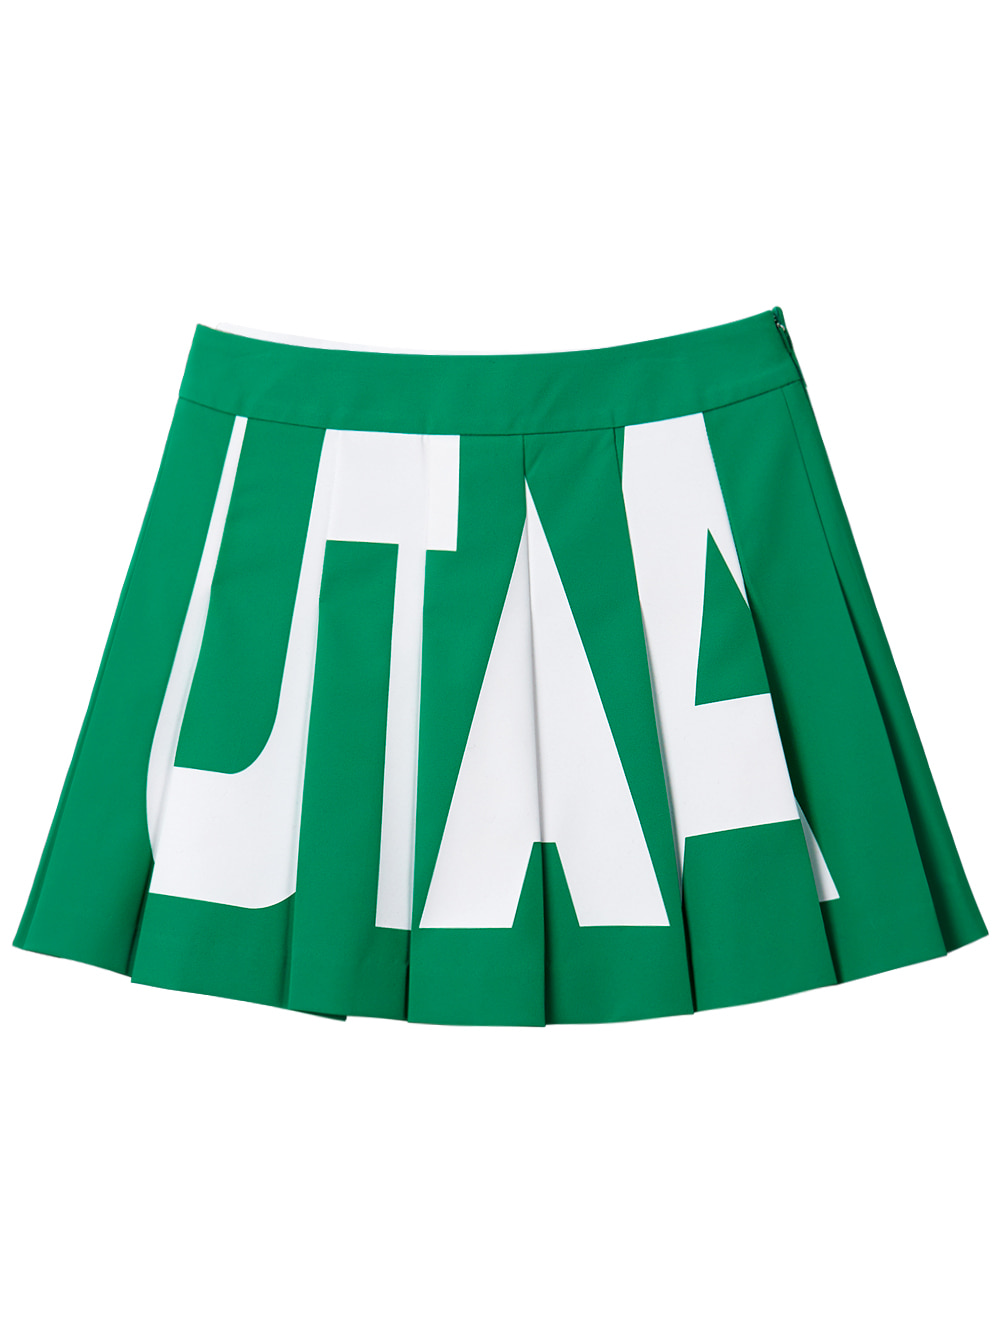 UTAA Bold Logo Flare Fan Skirt : Green (UB2SKF112GN)